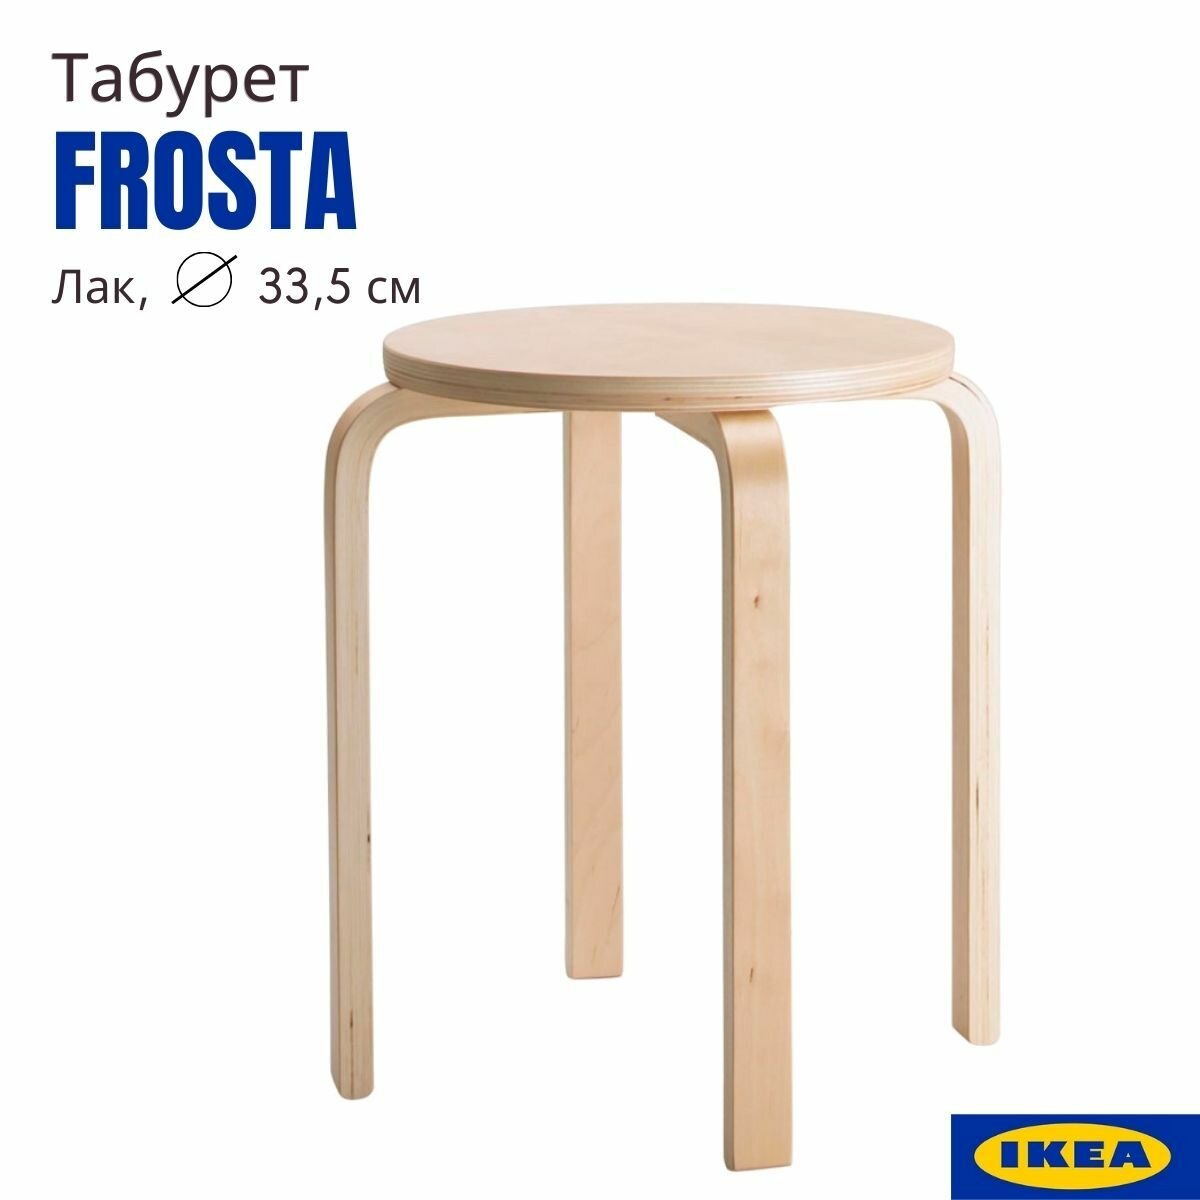 Табурет для кухни, лак, 33x45 см, 1 шт, аналог икеа фроста (IKEA FROSTA), круглый, деревянный табурет